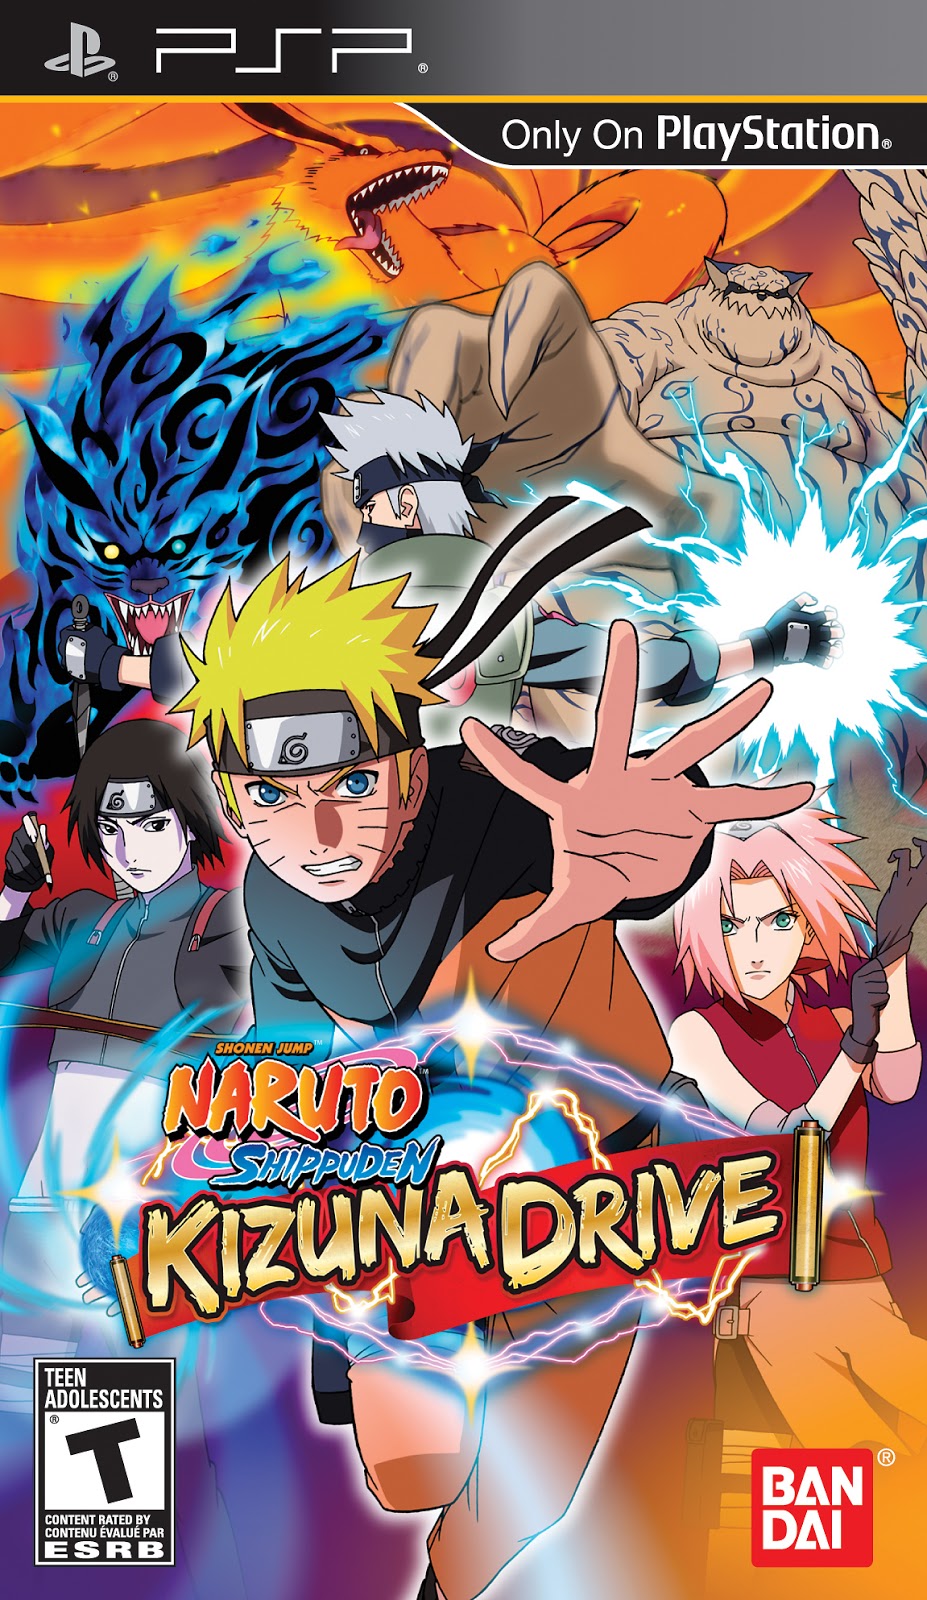 PSP - Naruto Shippuden Kizuna Drive - PPSSPP - Free ...